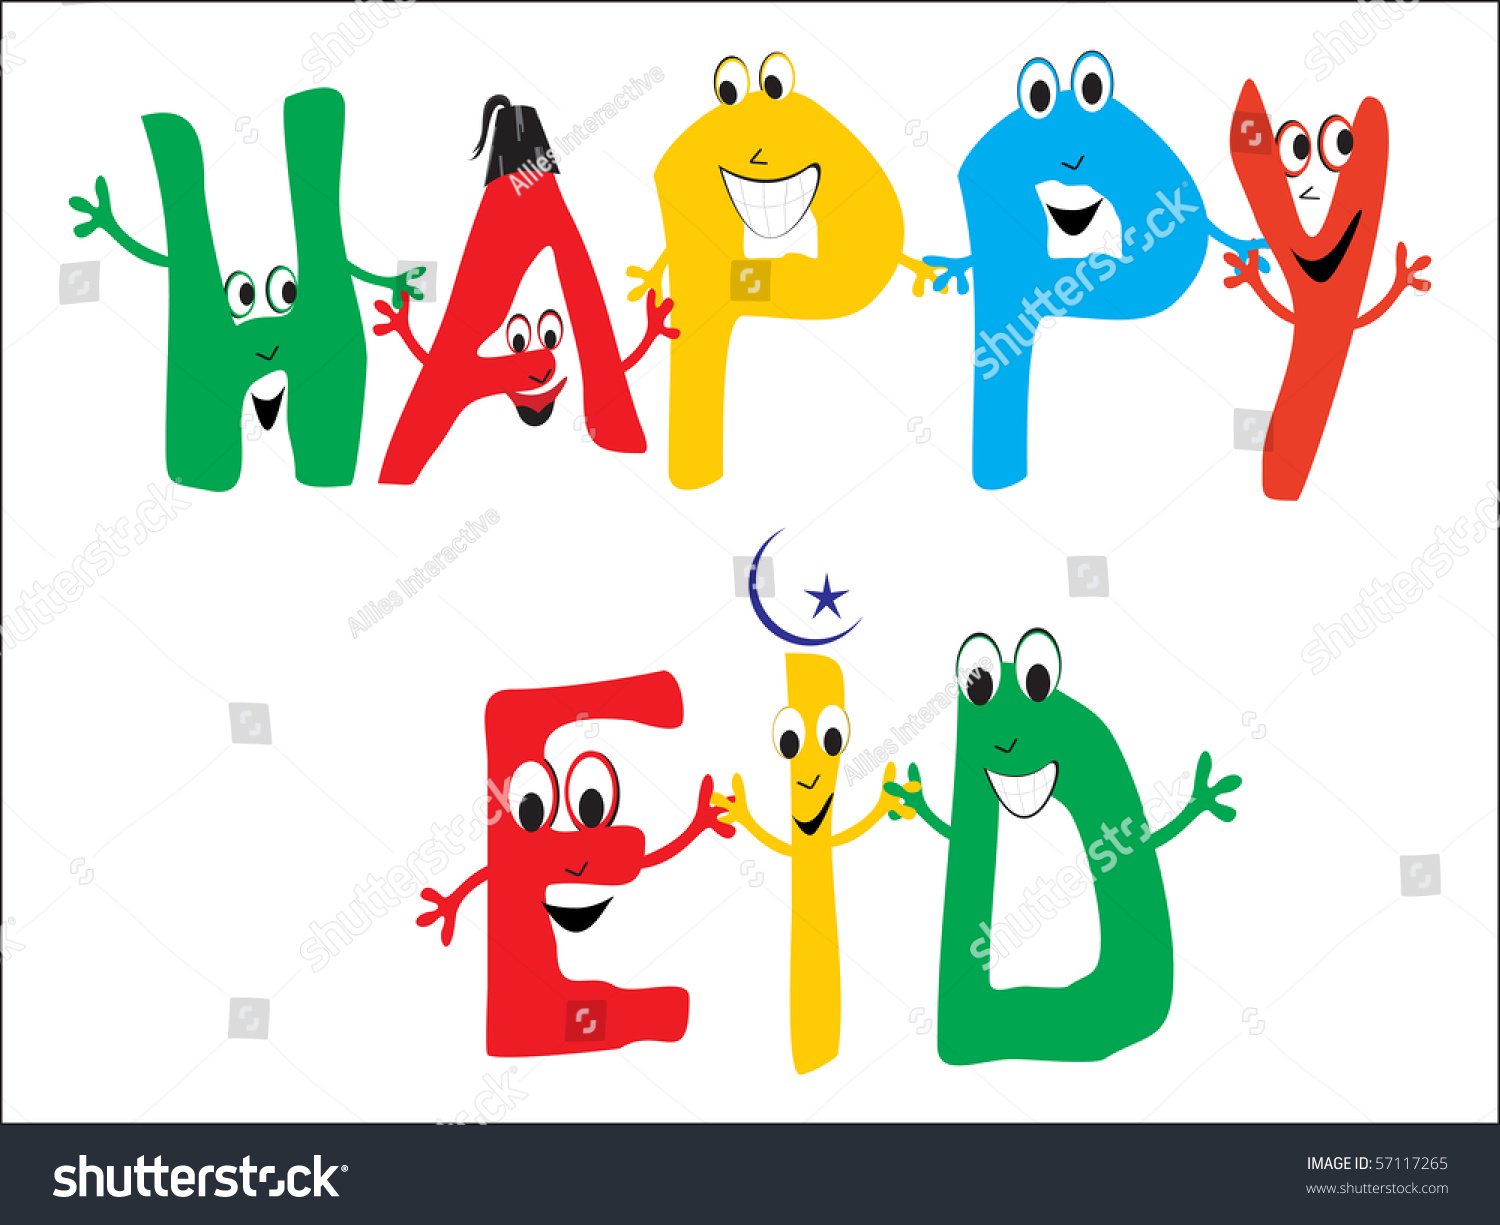 happy eid clipart - photo #1